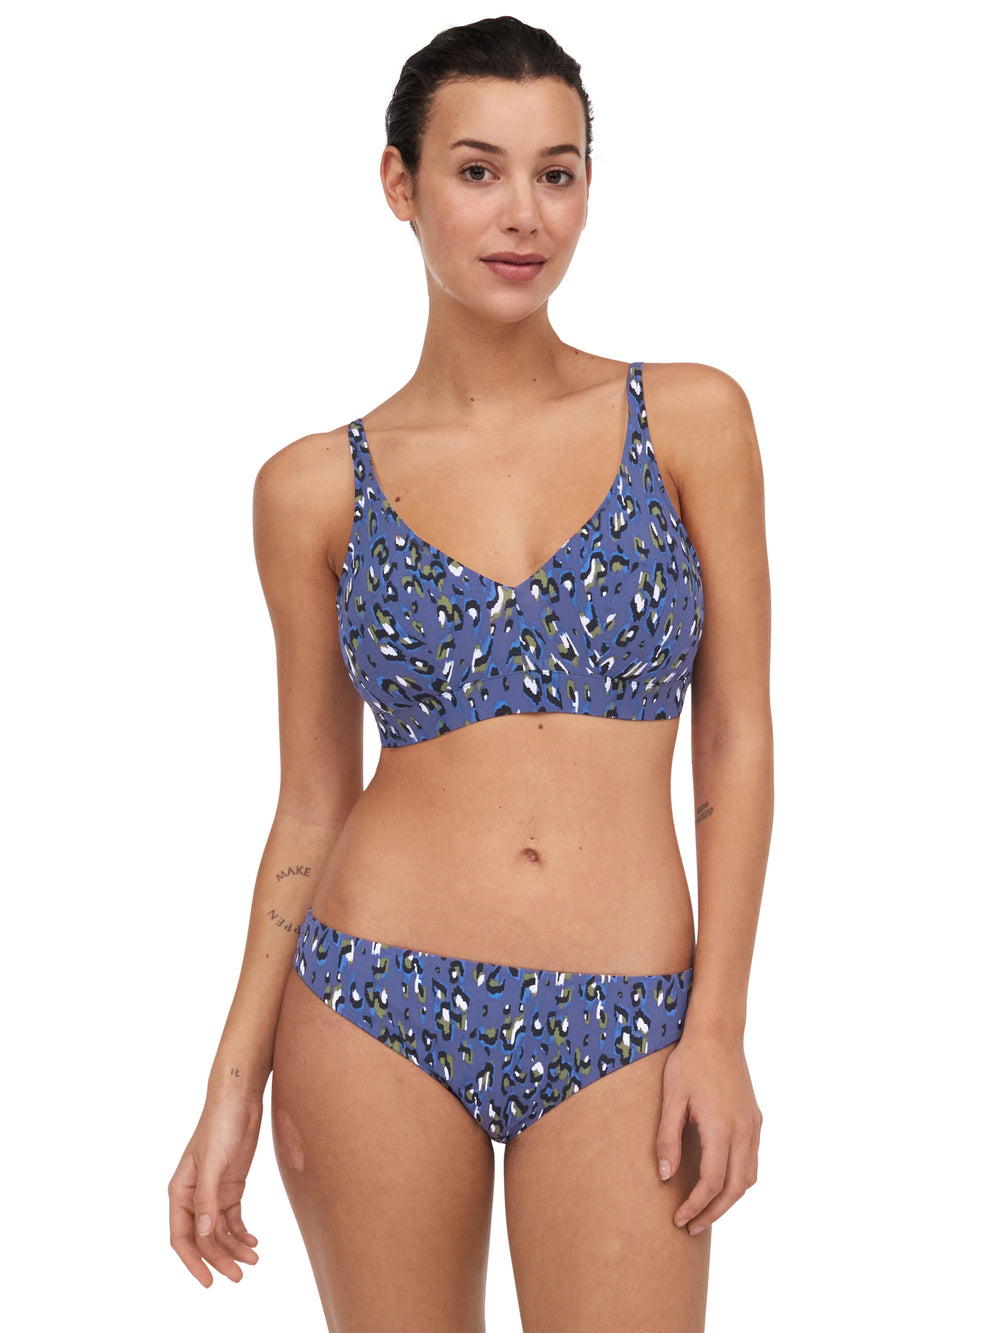 Chantelle Traje de baño Bikini estilo camiseta escotado sin aros Eos - Bikini escotado de leopardo azul Chantelle